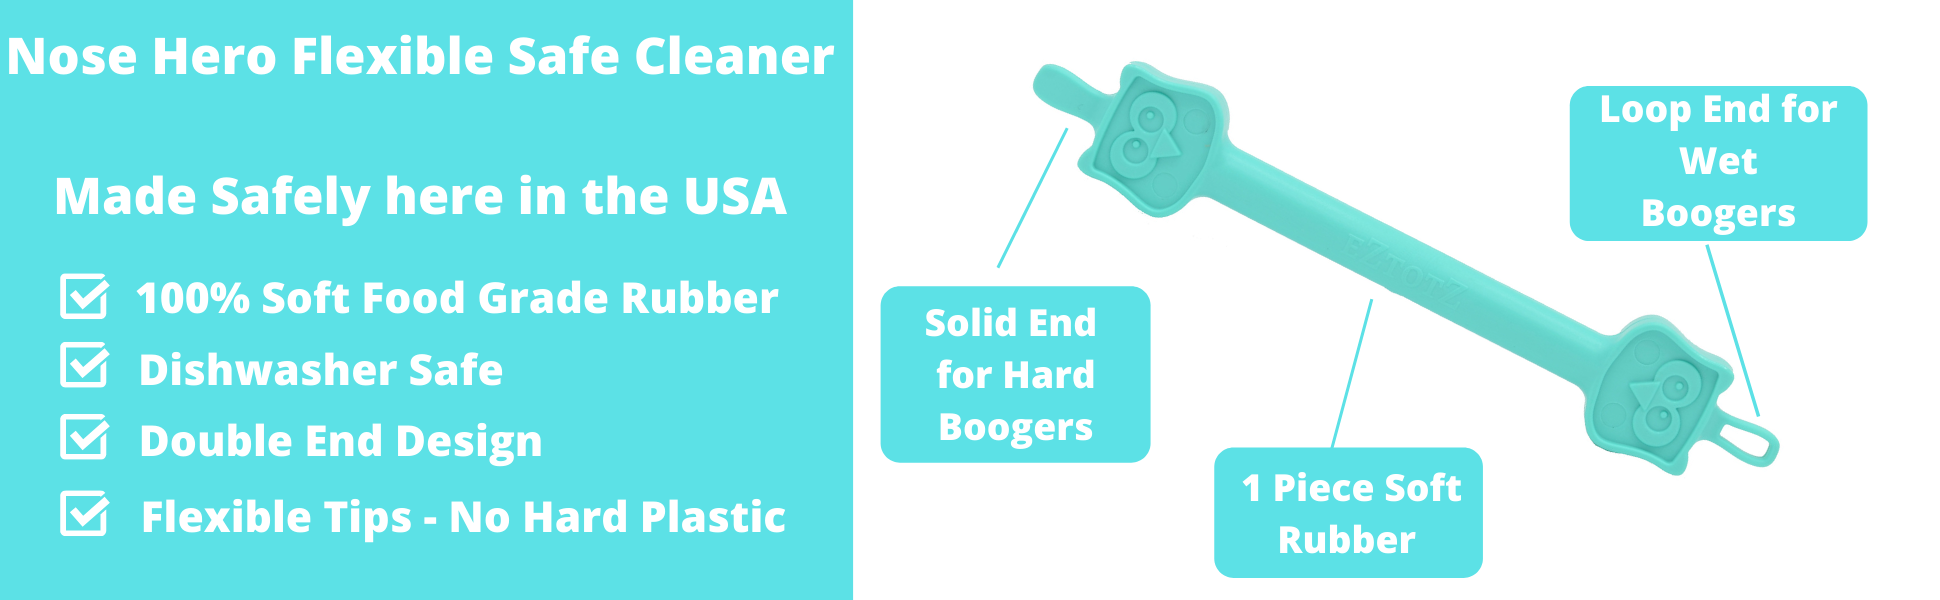 Oogiebear Nasal & Ear Cleaner - 2 Pack